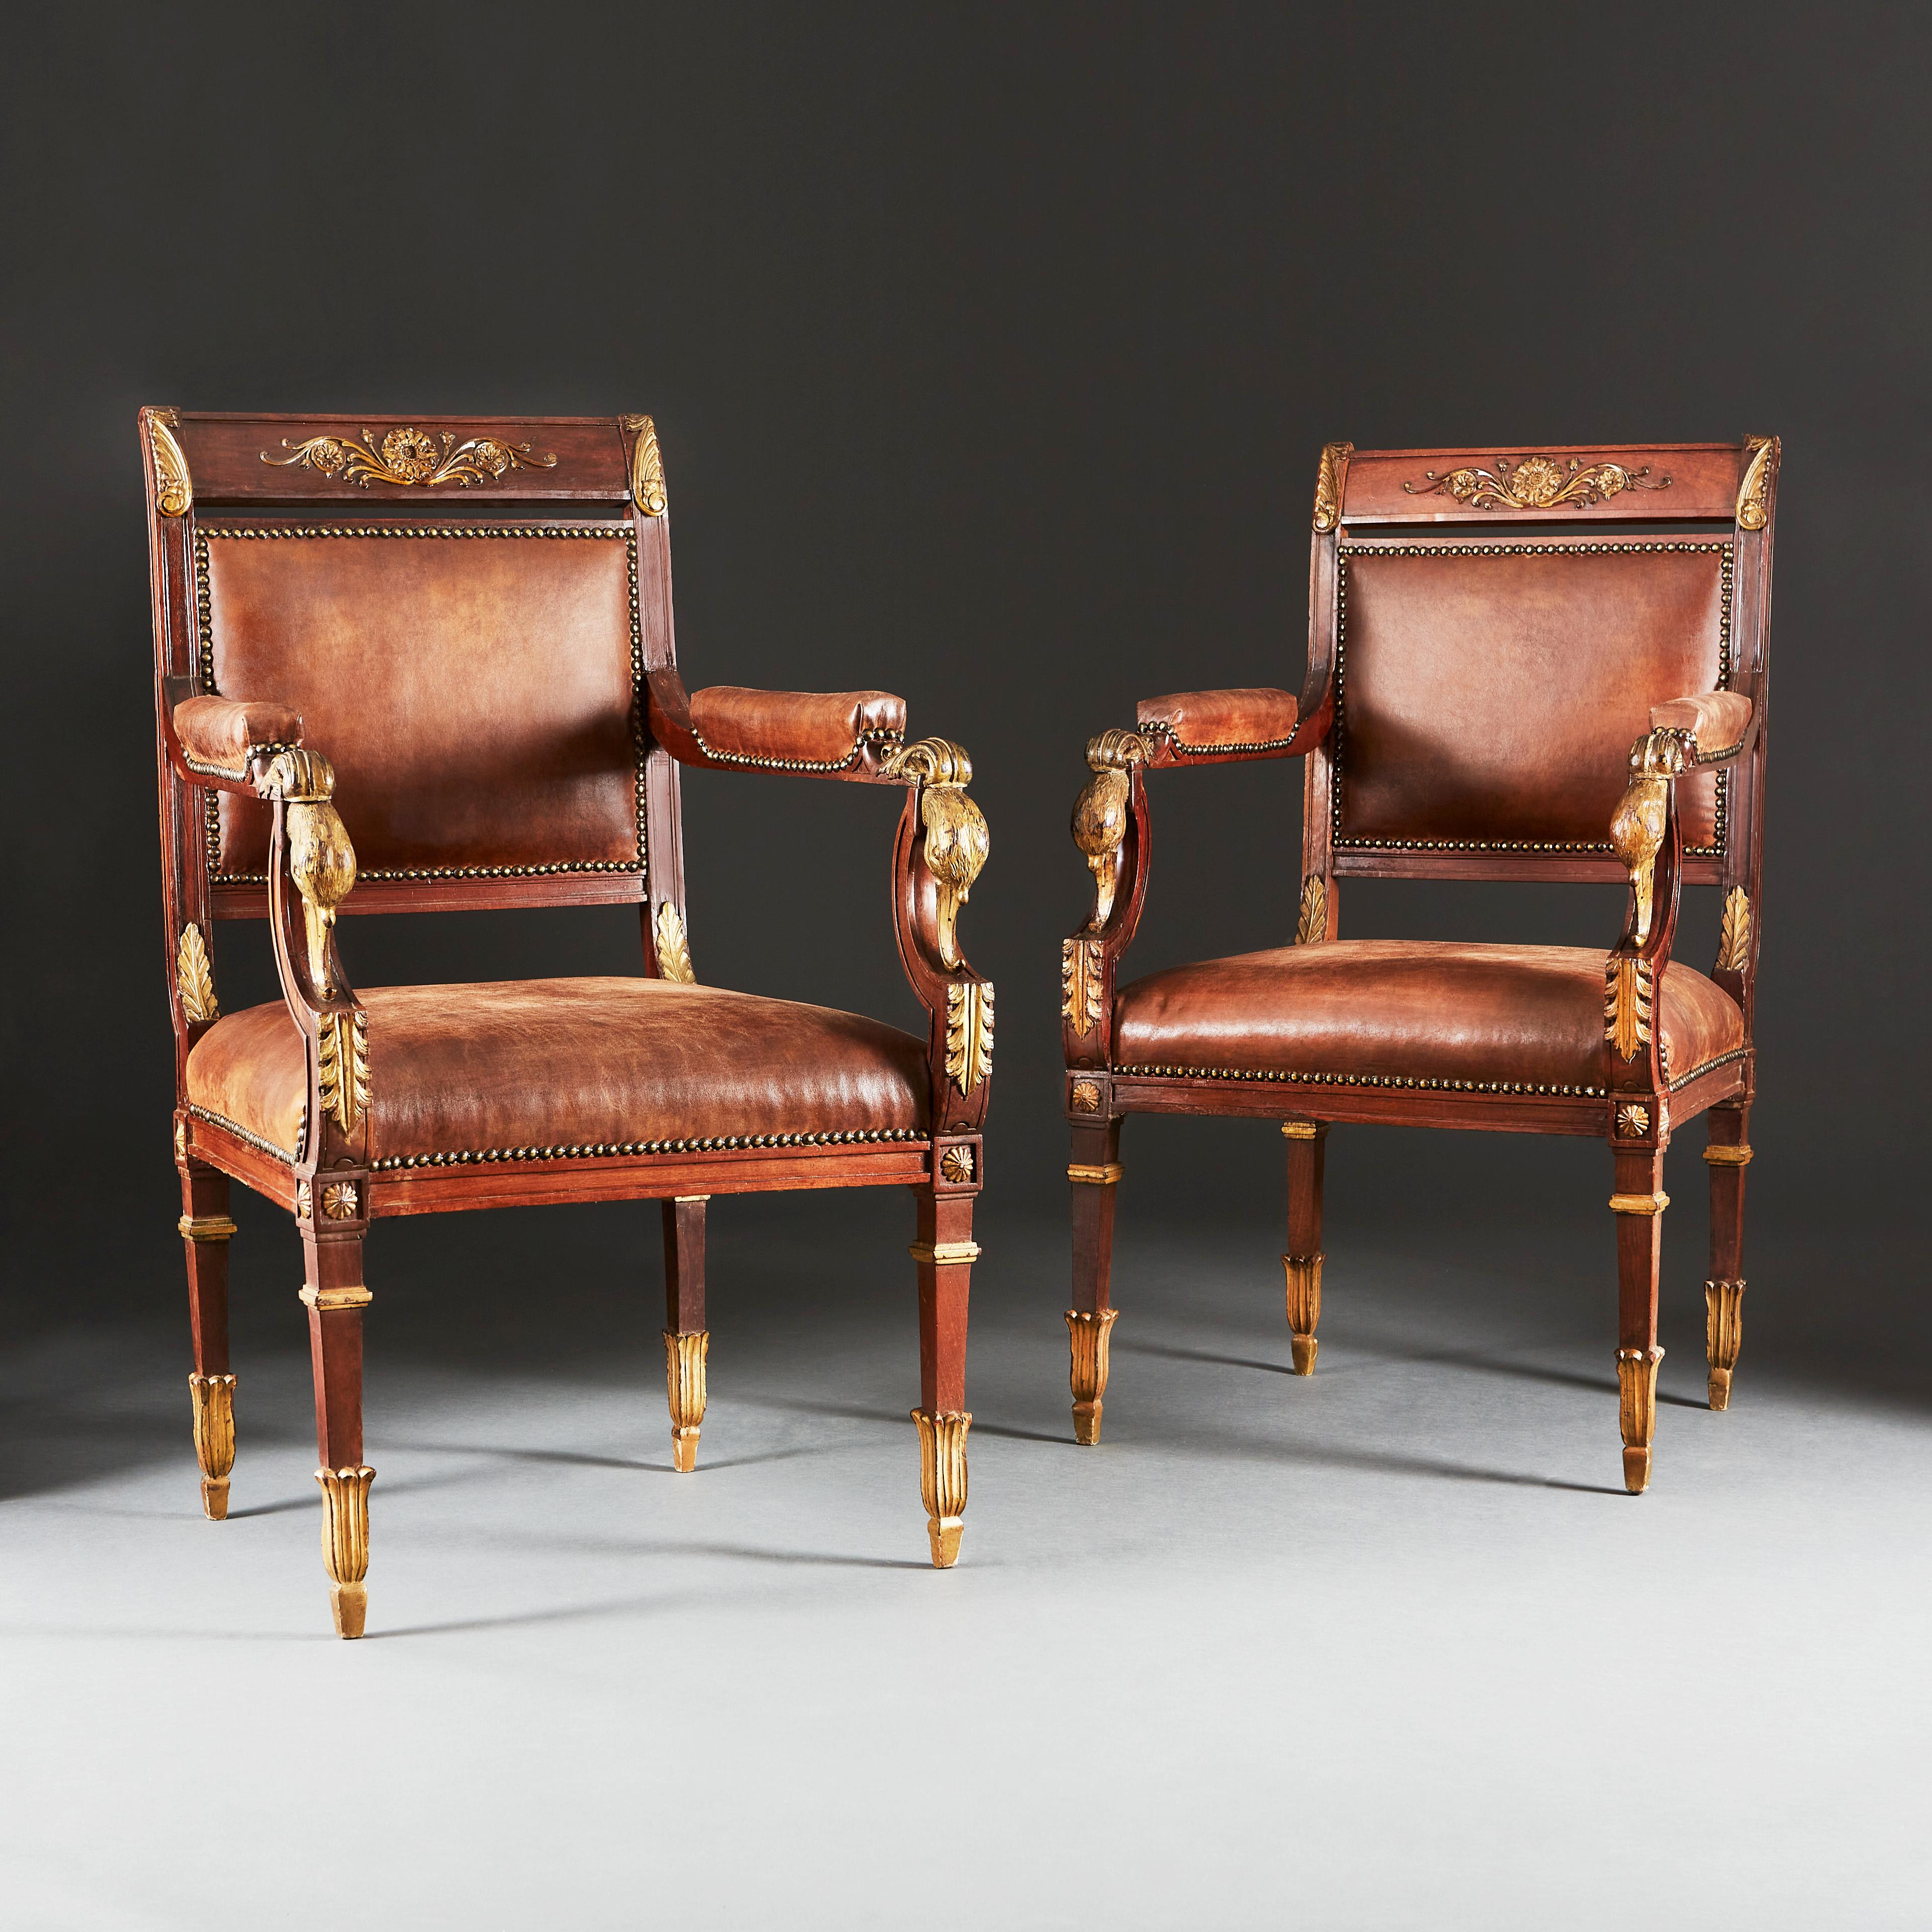 Ein Paar geschnitzte und vergoldete Sessel im Empire-Stil. Die Mahagoni-Rahmen mit geschnitzten und vergoldeten Schwanenköpfen an den Armlehnen und der Jansen-Rosette an den Spitzen der sich verjüngenden Beine. Die Rahmen wurden mehrfach mit einer